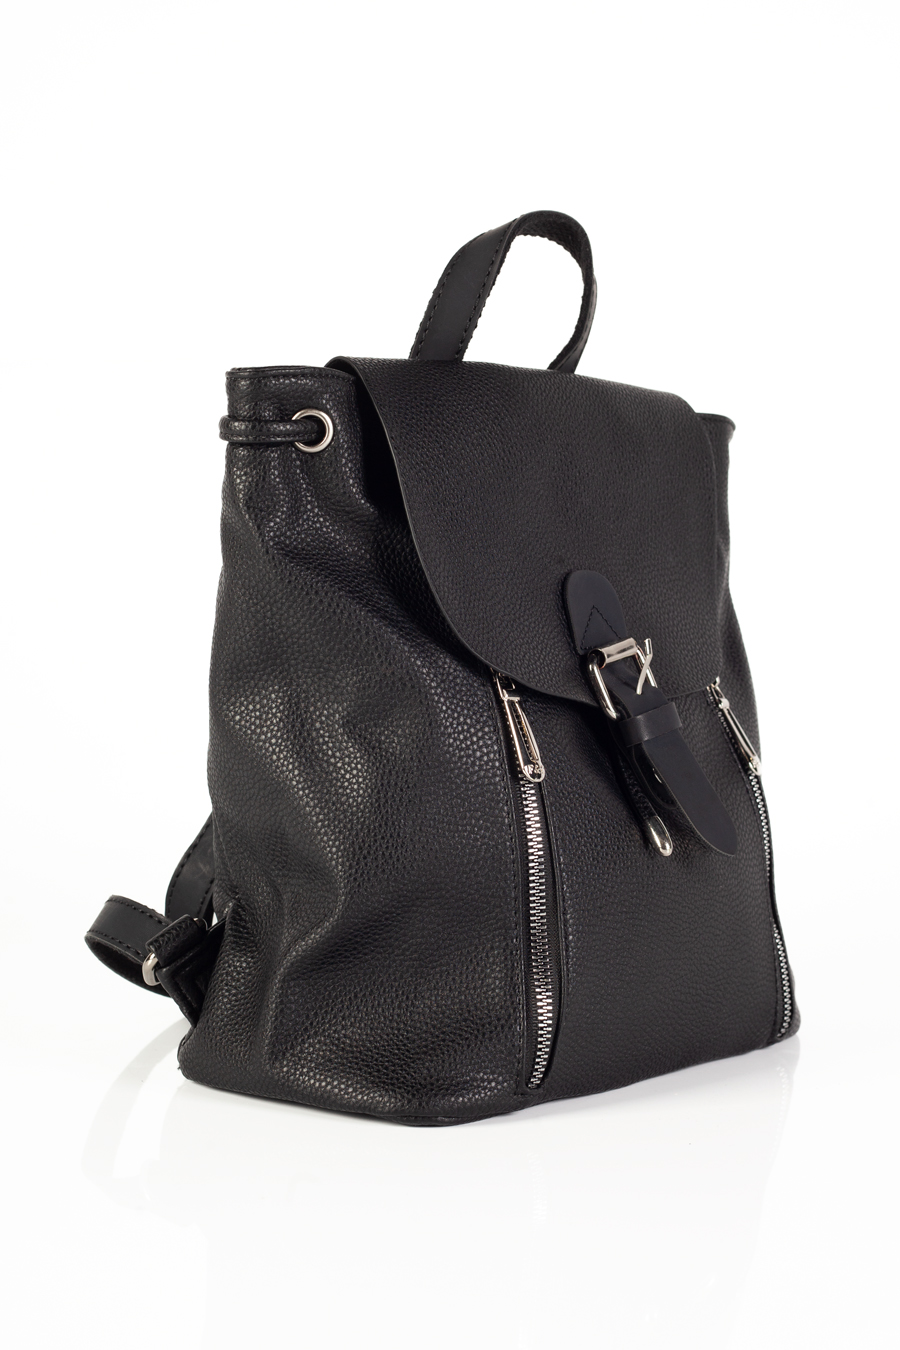 Backpack FLORA&CO F6735-NOIR